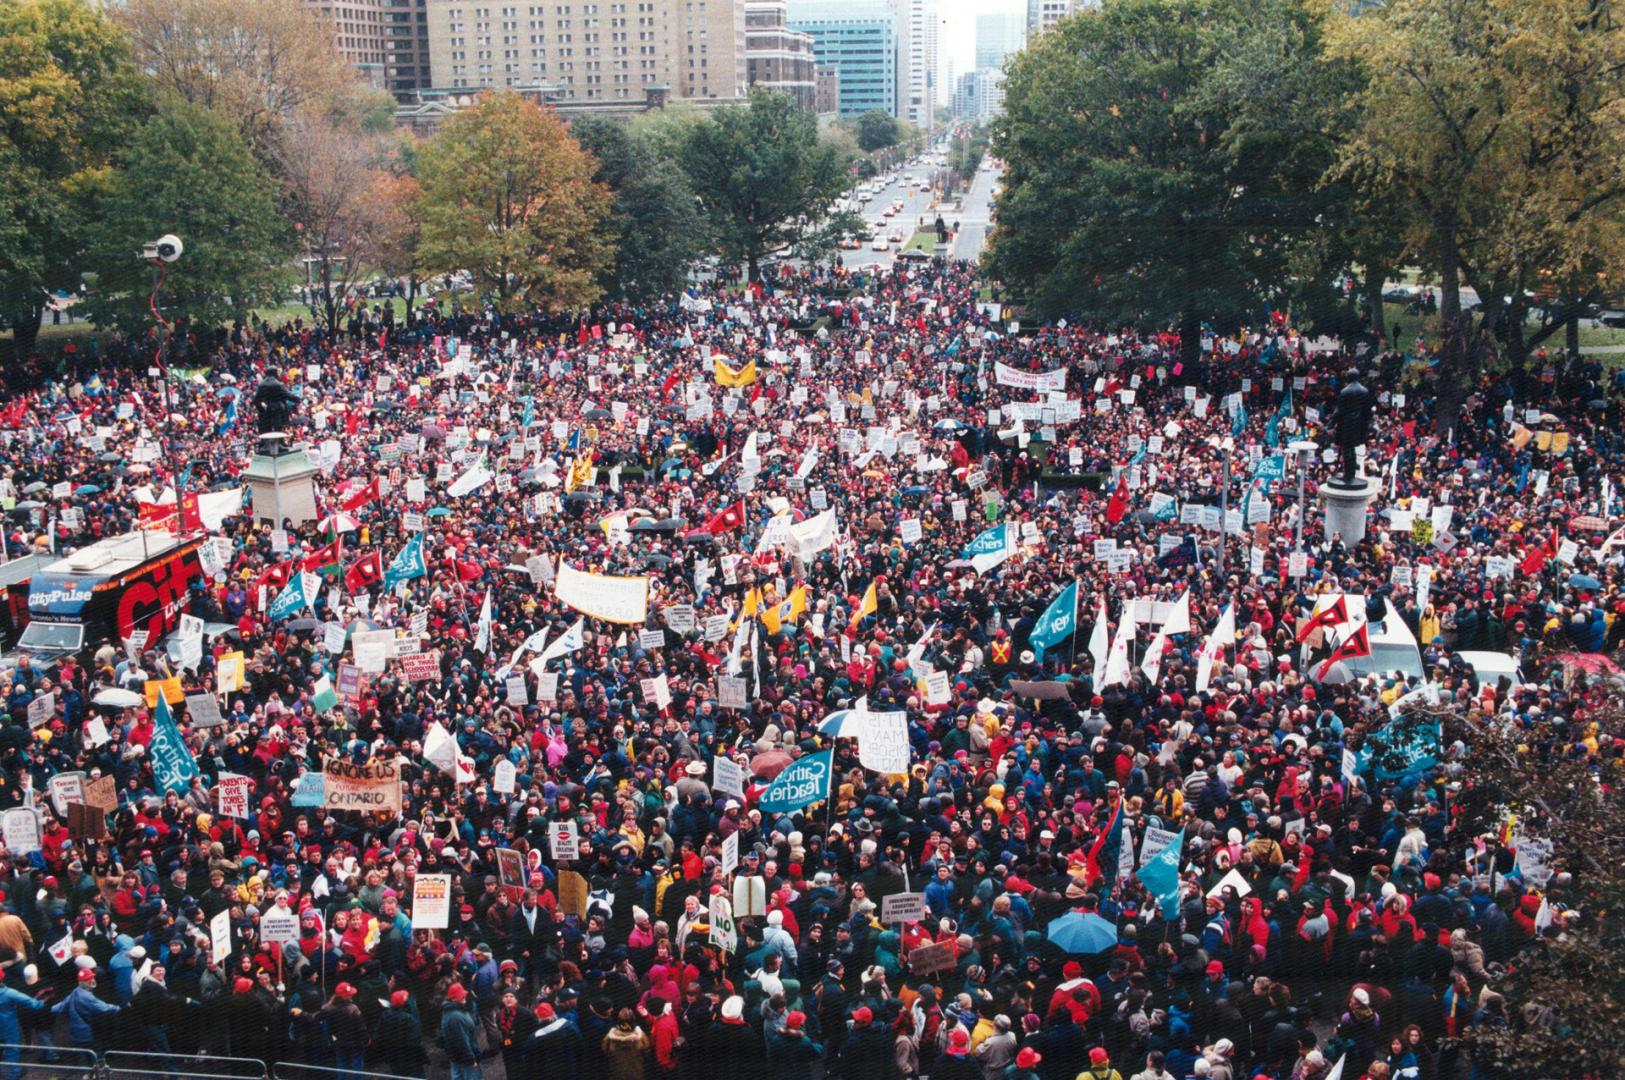 Strikes - Canada - Ontario - Teachers October 27 1997 - November 9 1997